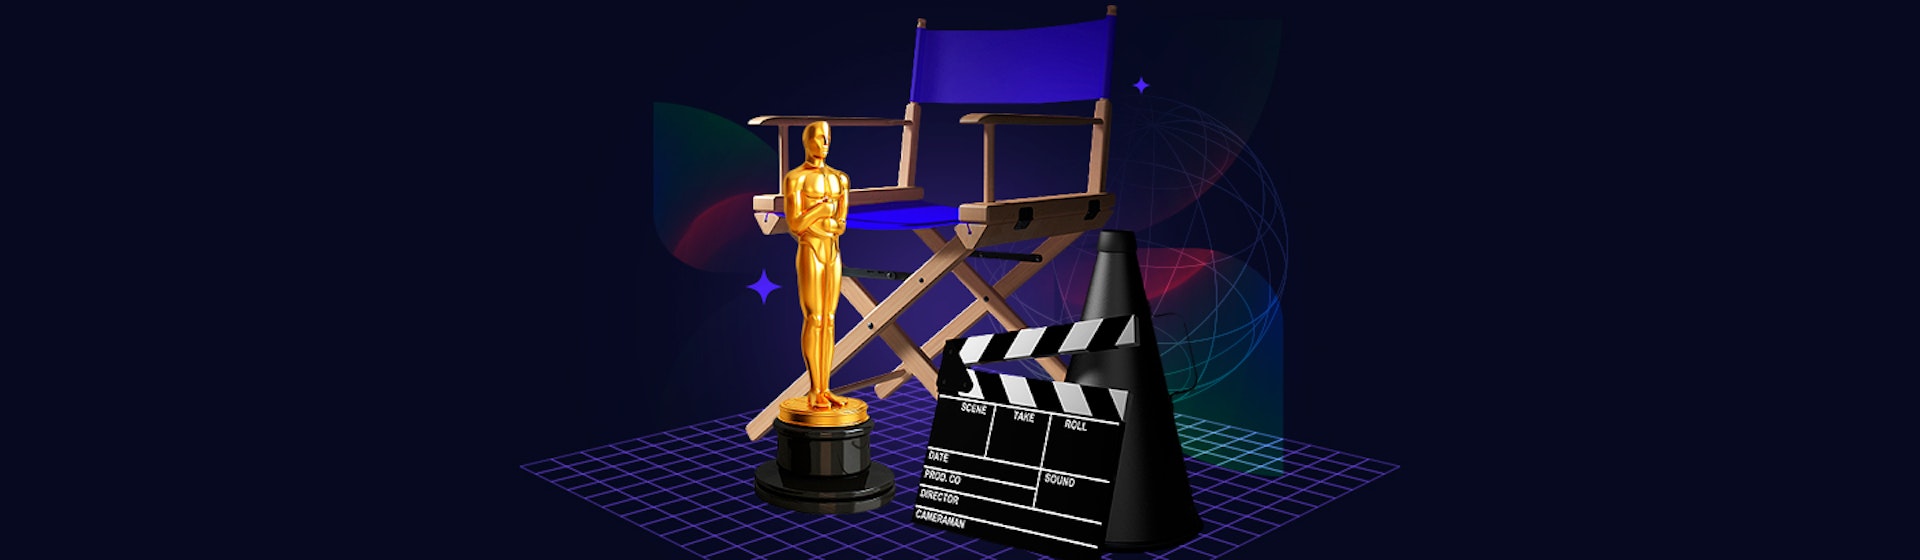 El equipo de producción con el que lograrás productos audiovisuales dignos de un Óscar